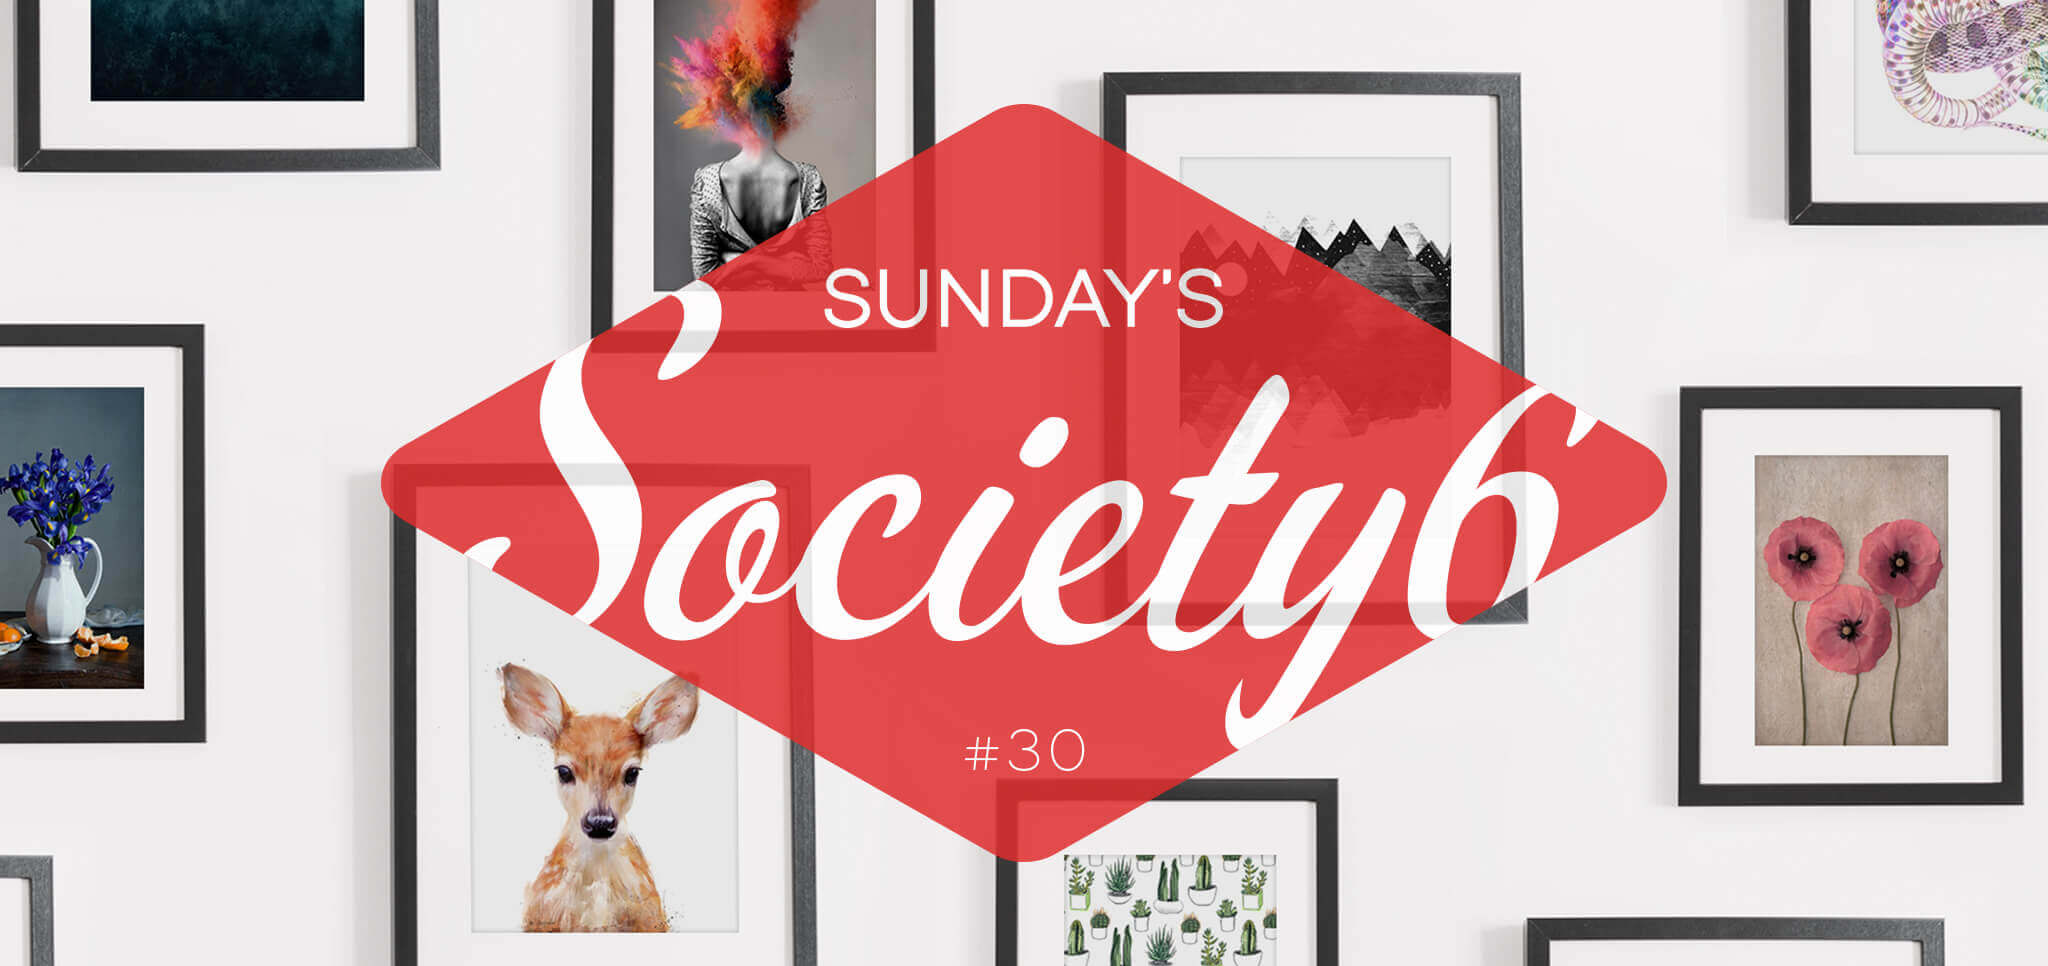 Sunday’s Society6 #30 | Paint it black